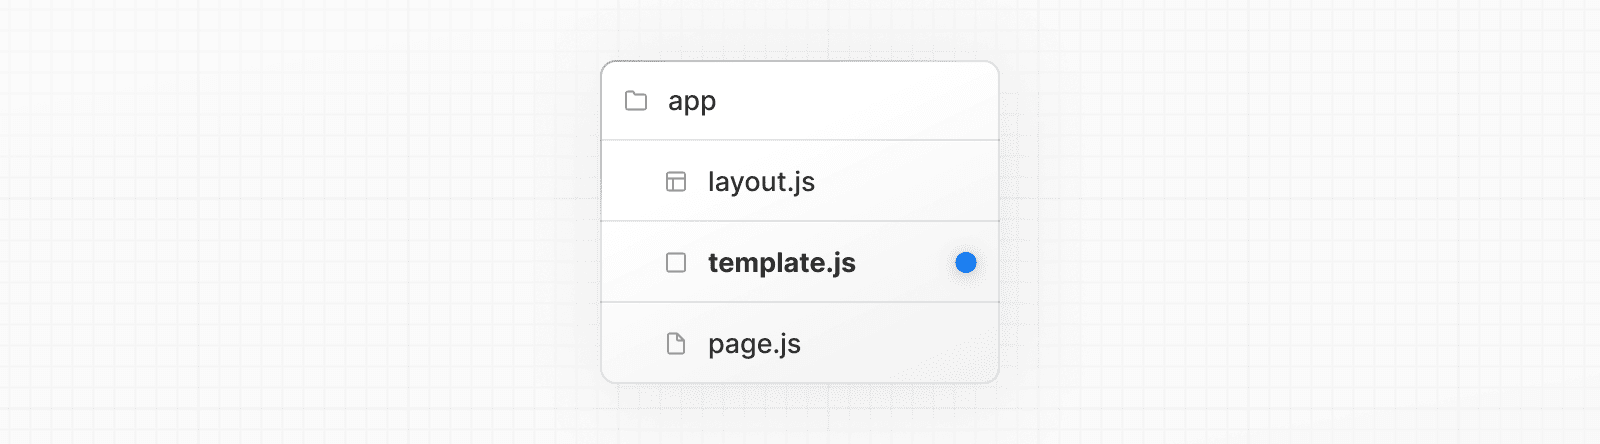 template.js 특별한 파일